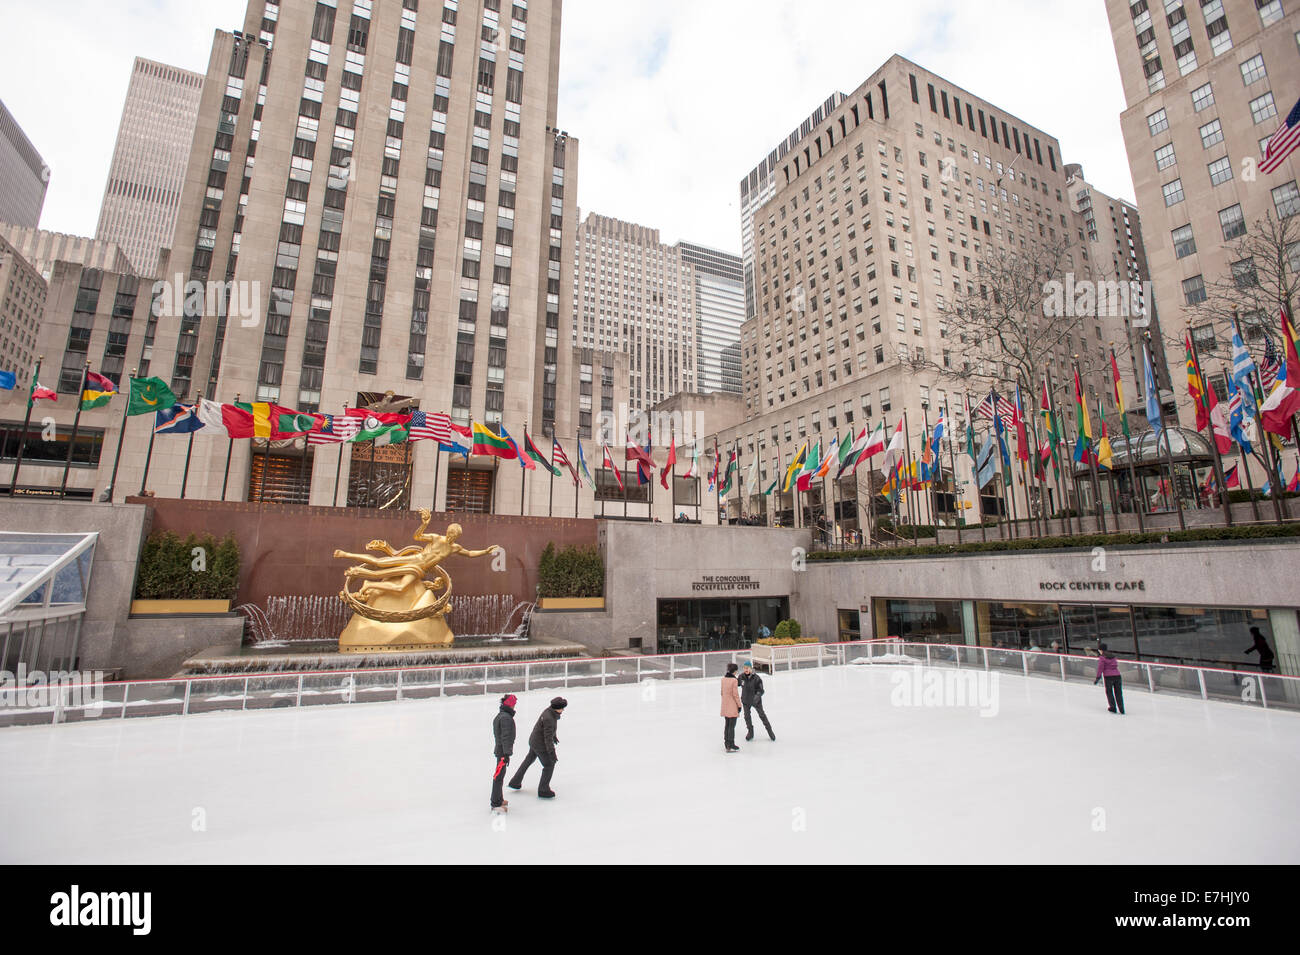 Patinaje sobre hielo. El Rockefeller Center. La ciudad de Nueva York. Foto de stock